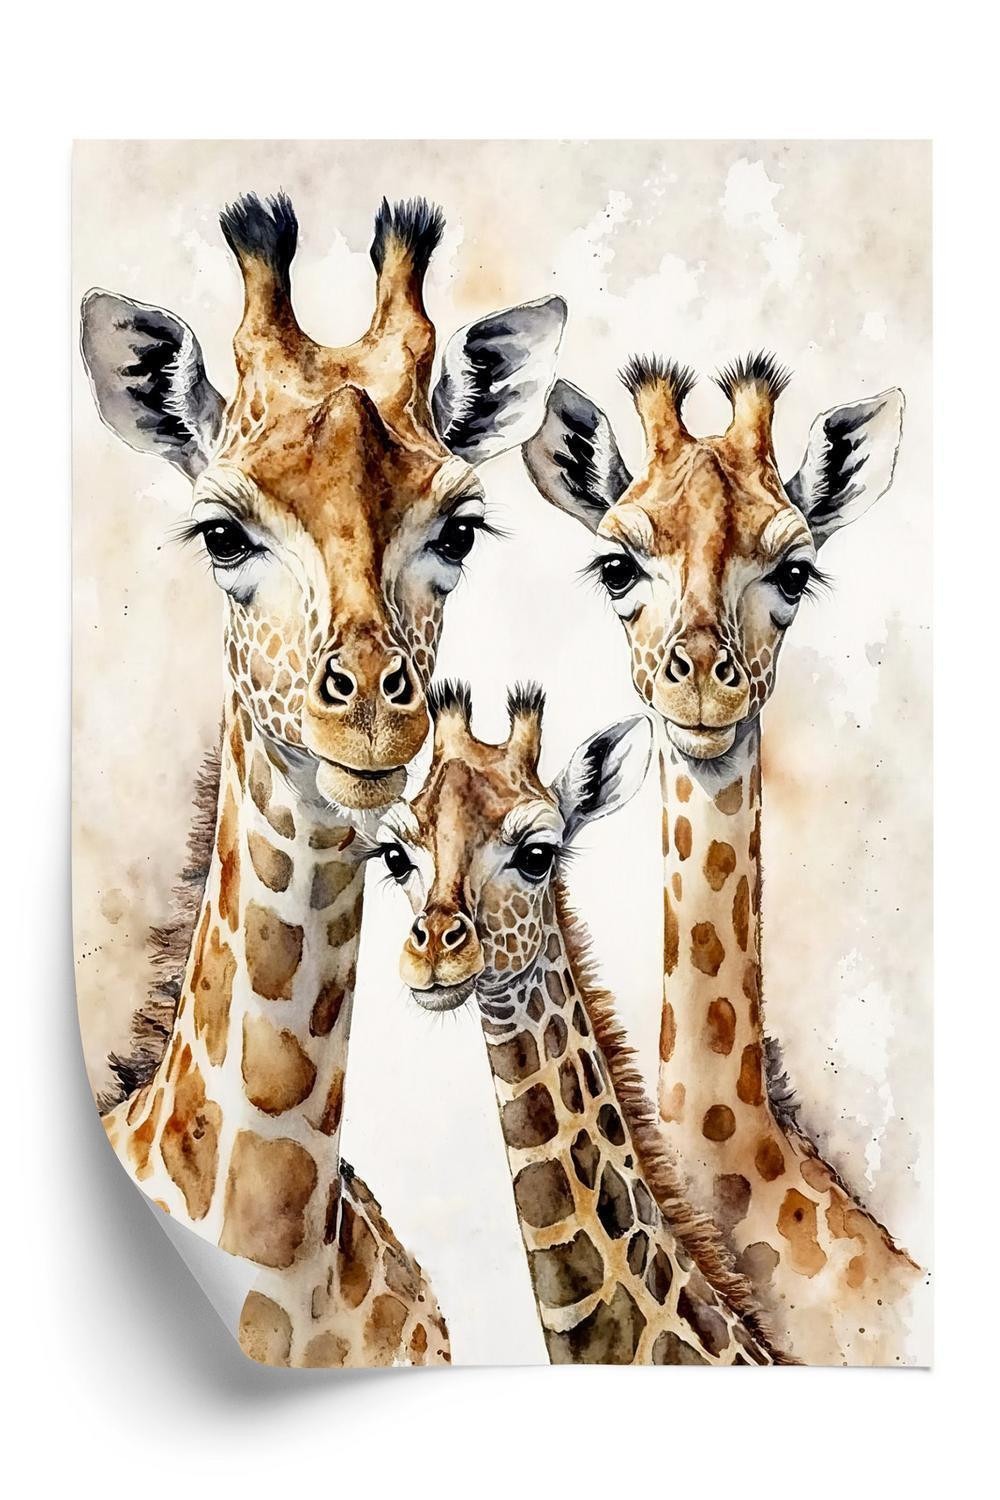 Plakat - Giraffe familie